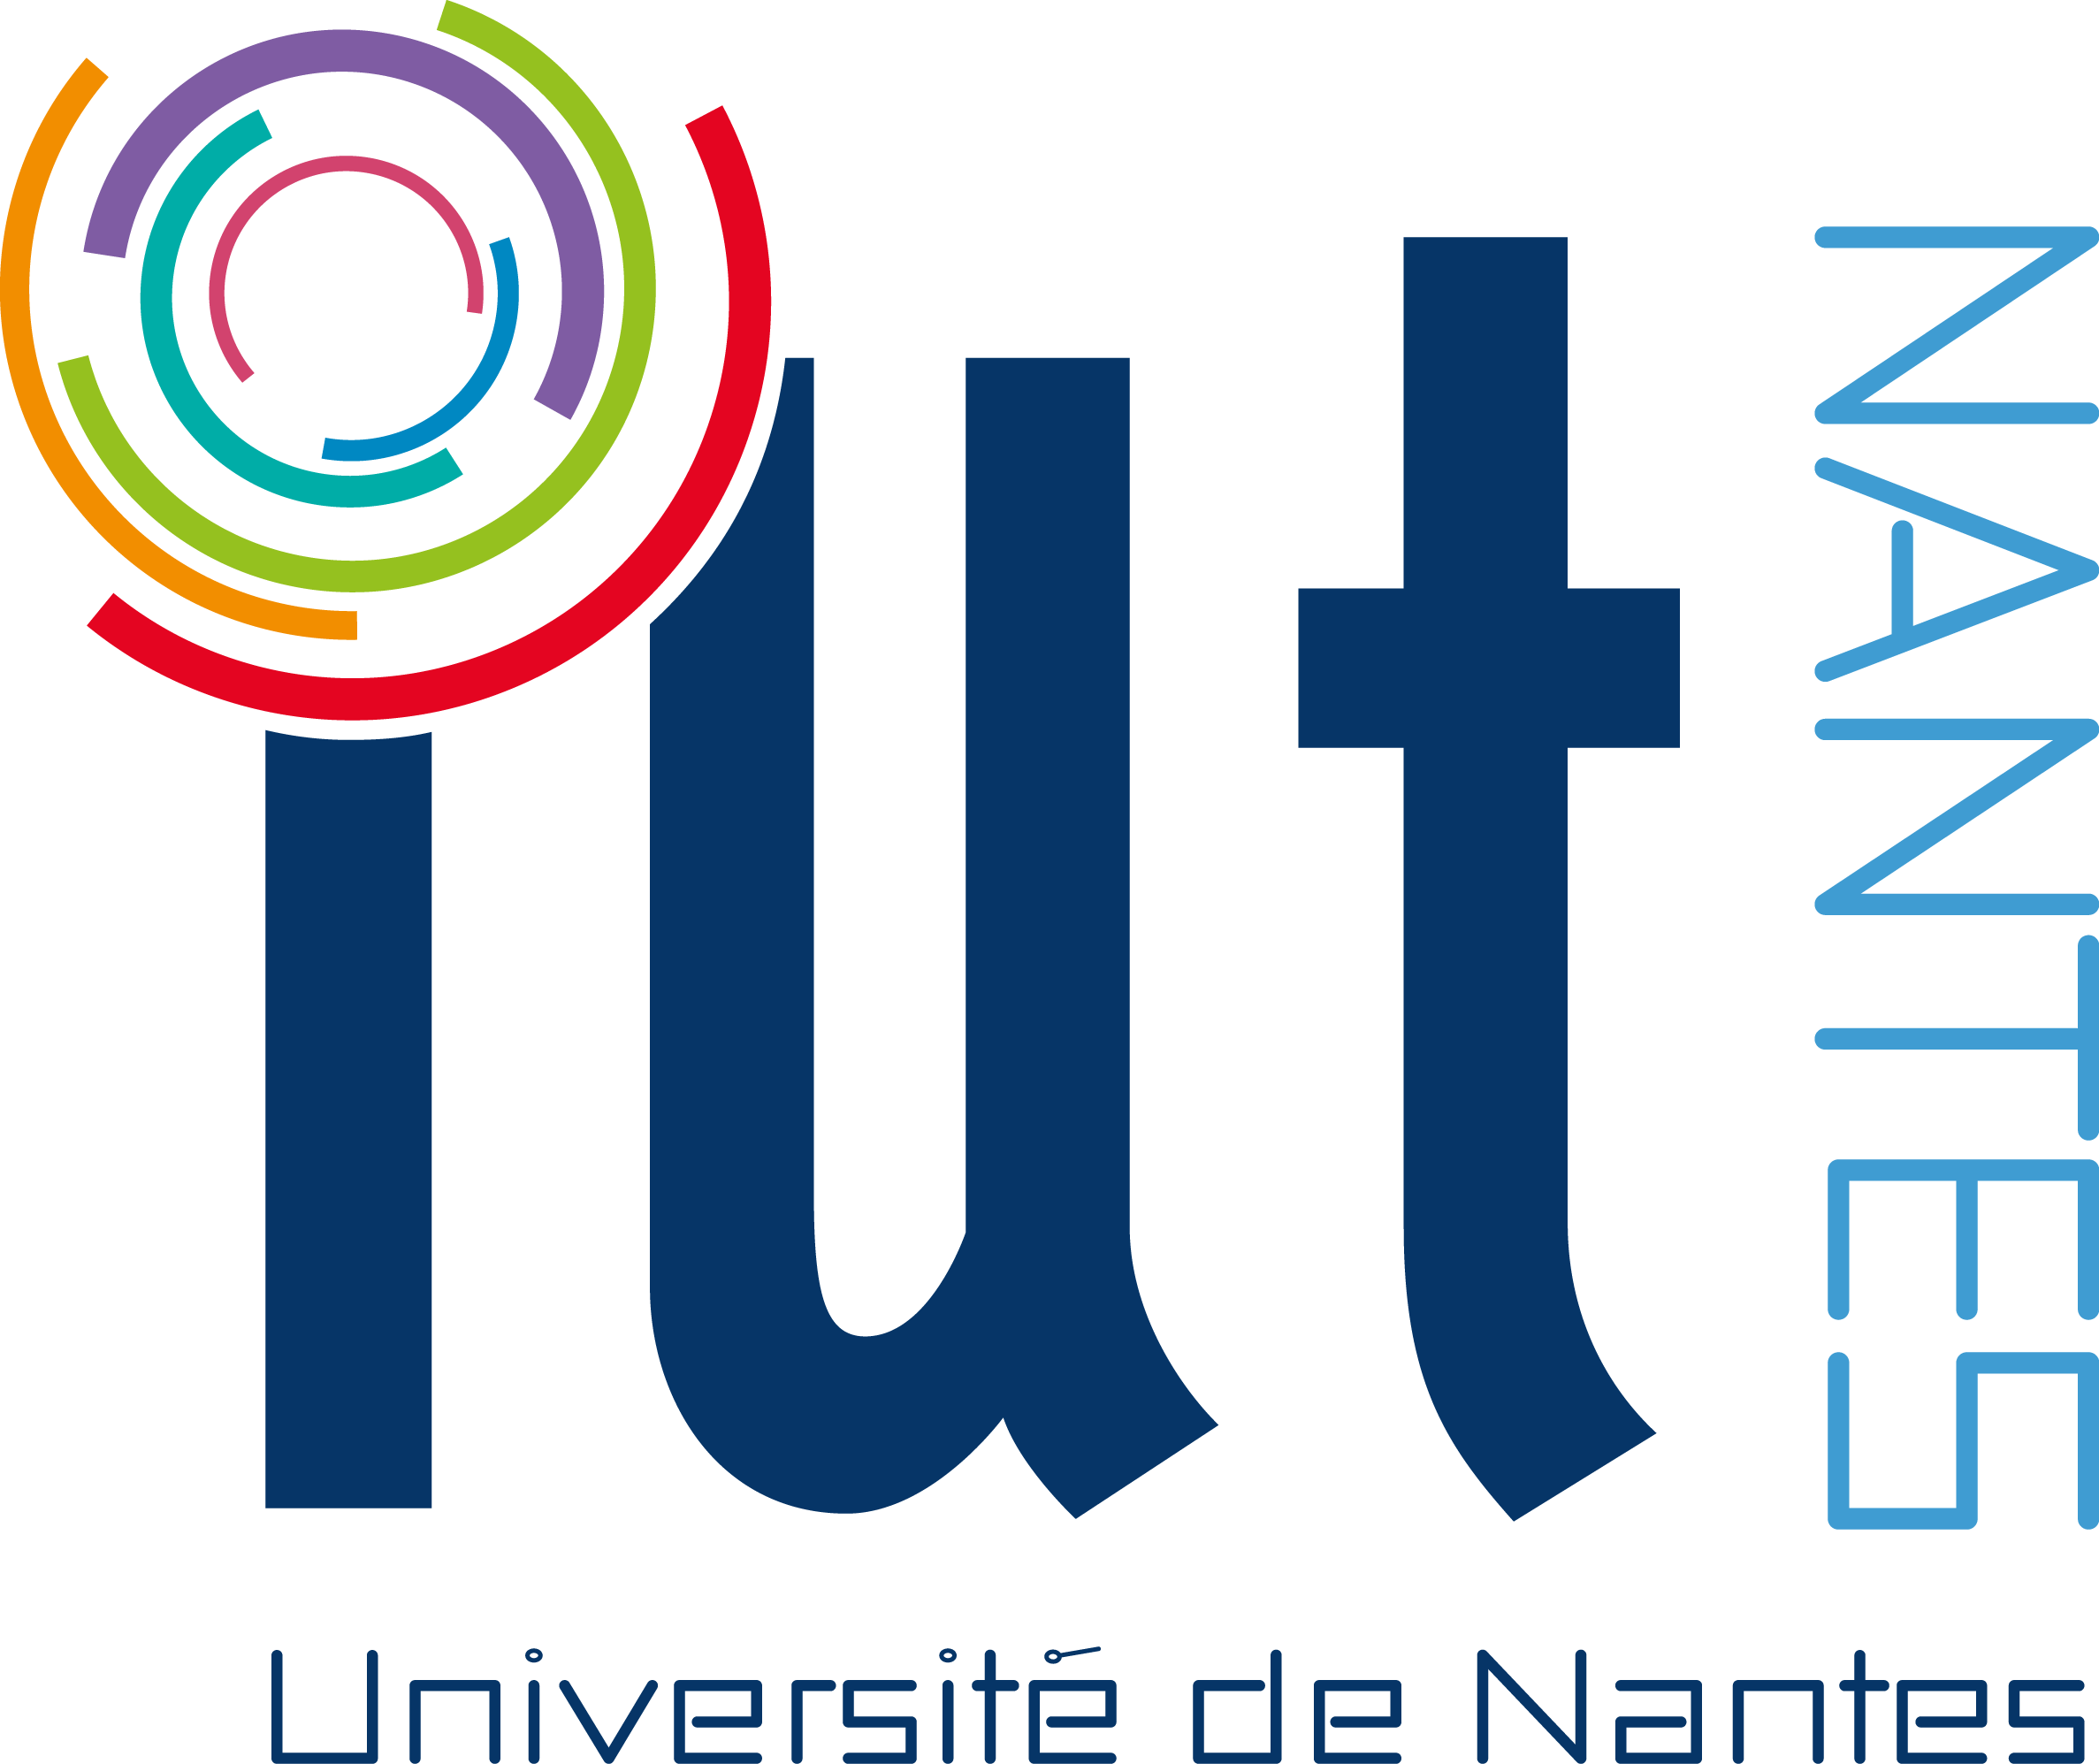 Logo IUT Nantes